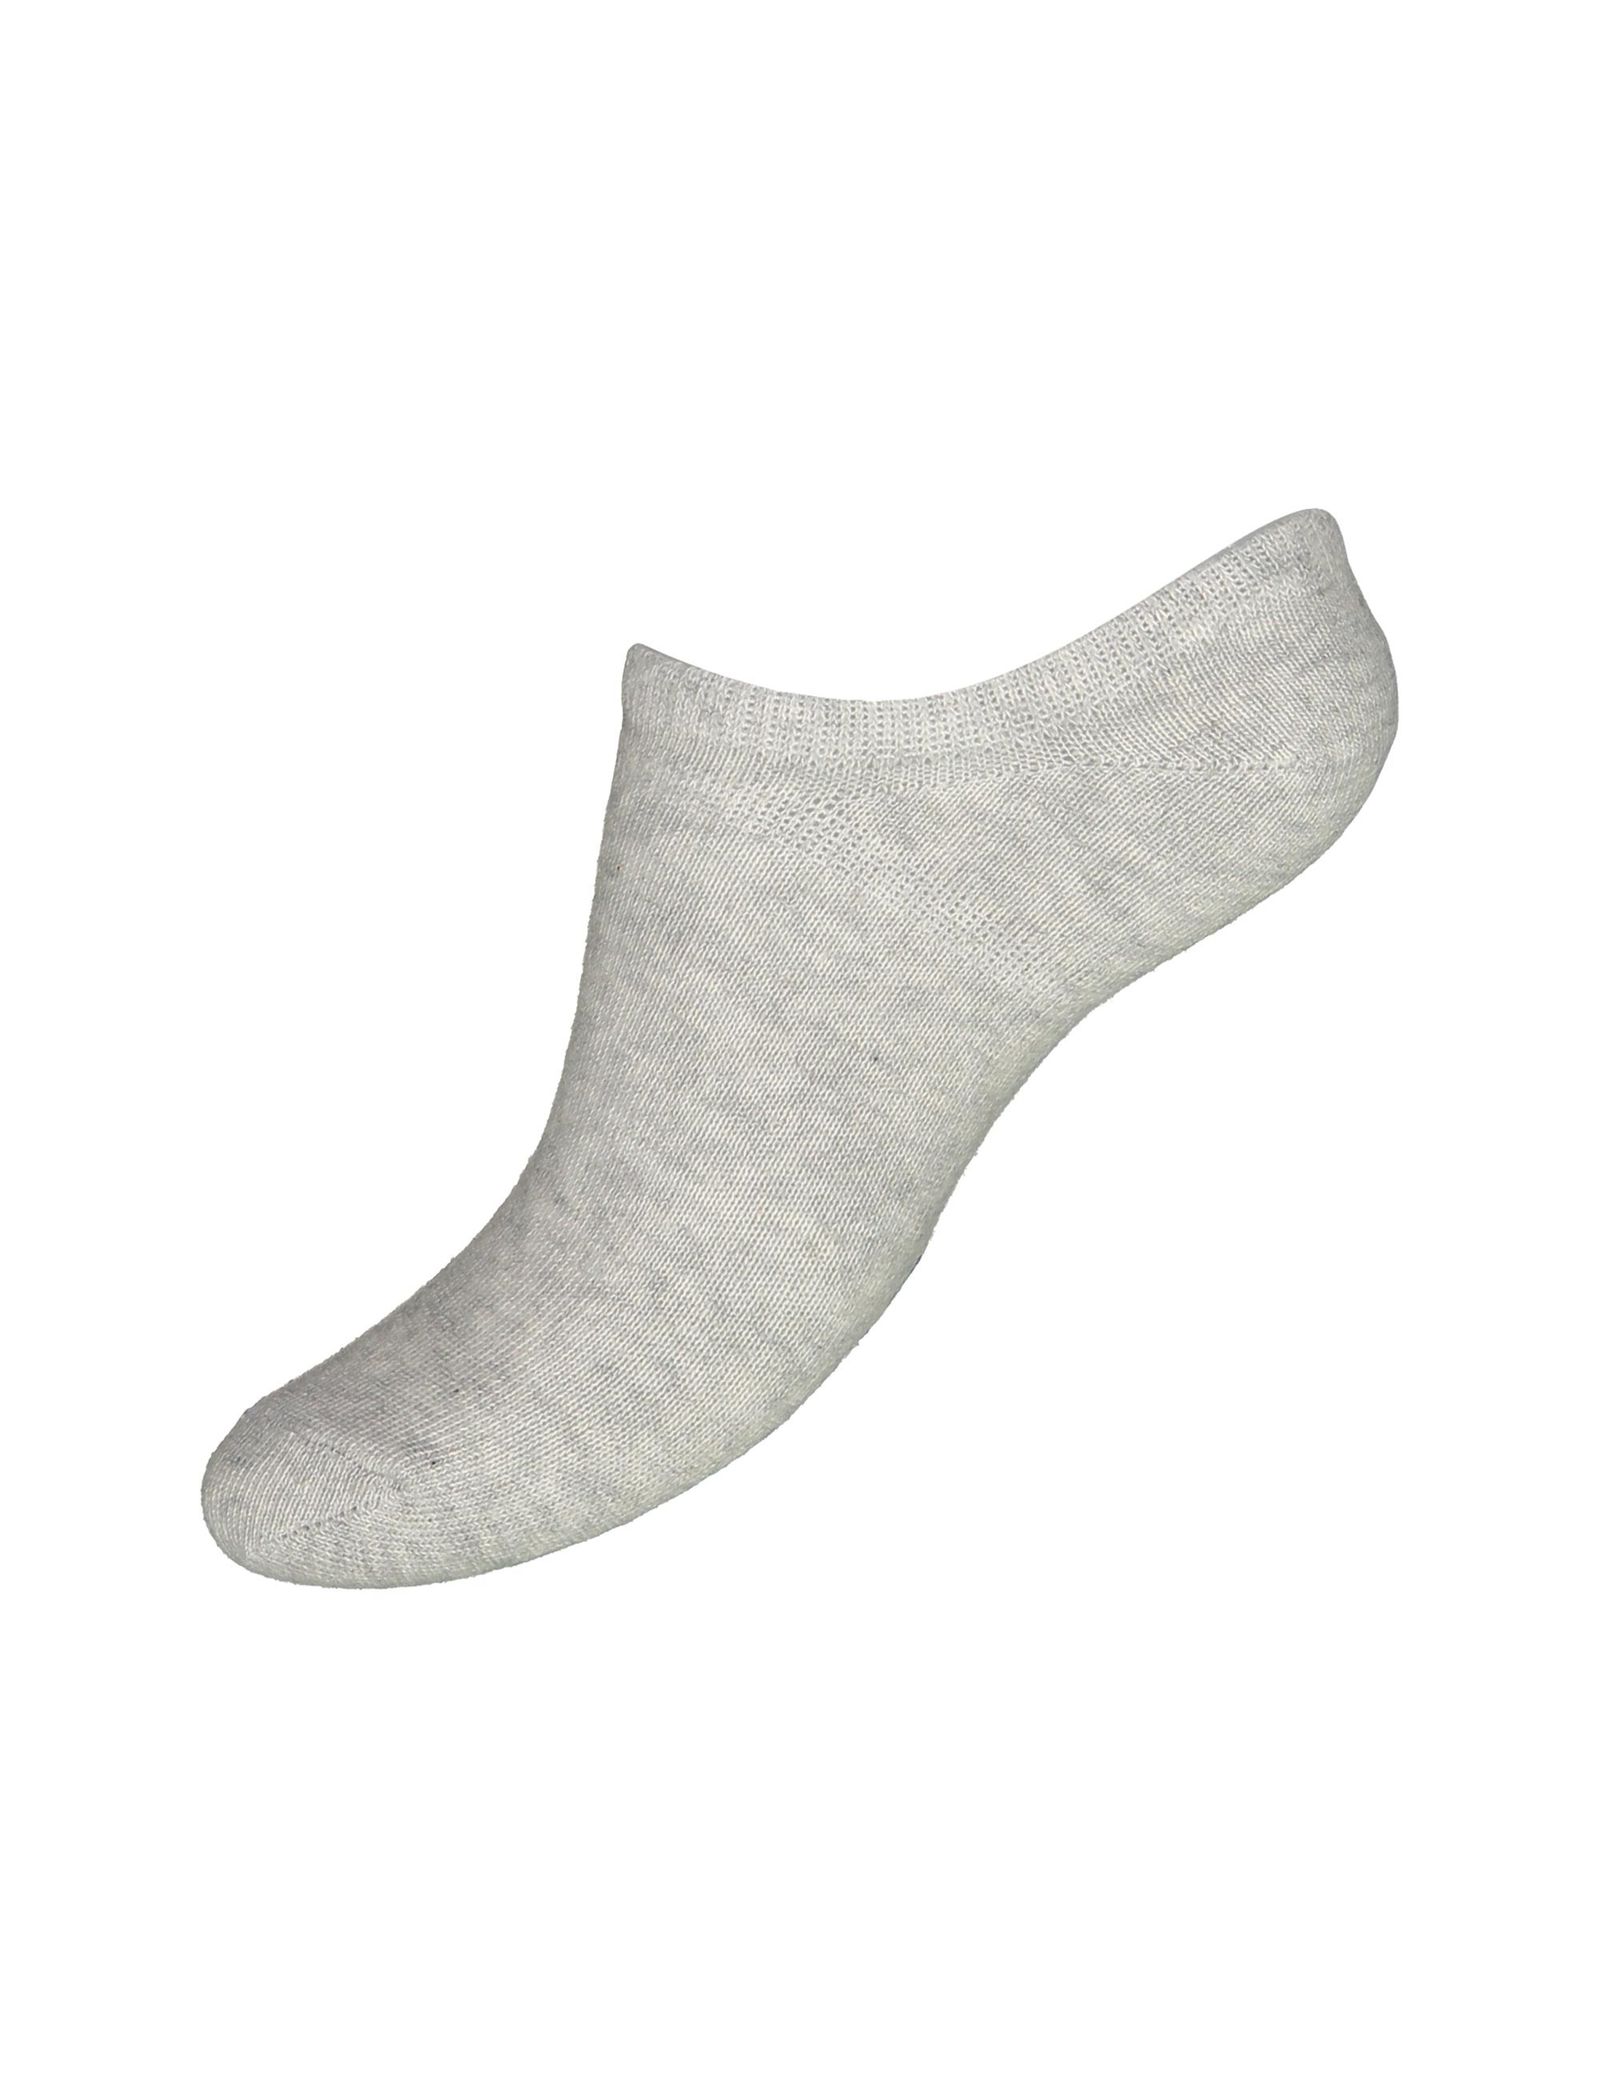 جوراب نخی بدون ساق بچگانه بسته 3 عددی - بلوکیدز - سفيد/طوسي/سرمه اي - 6